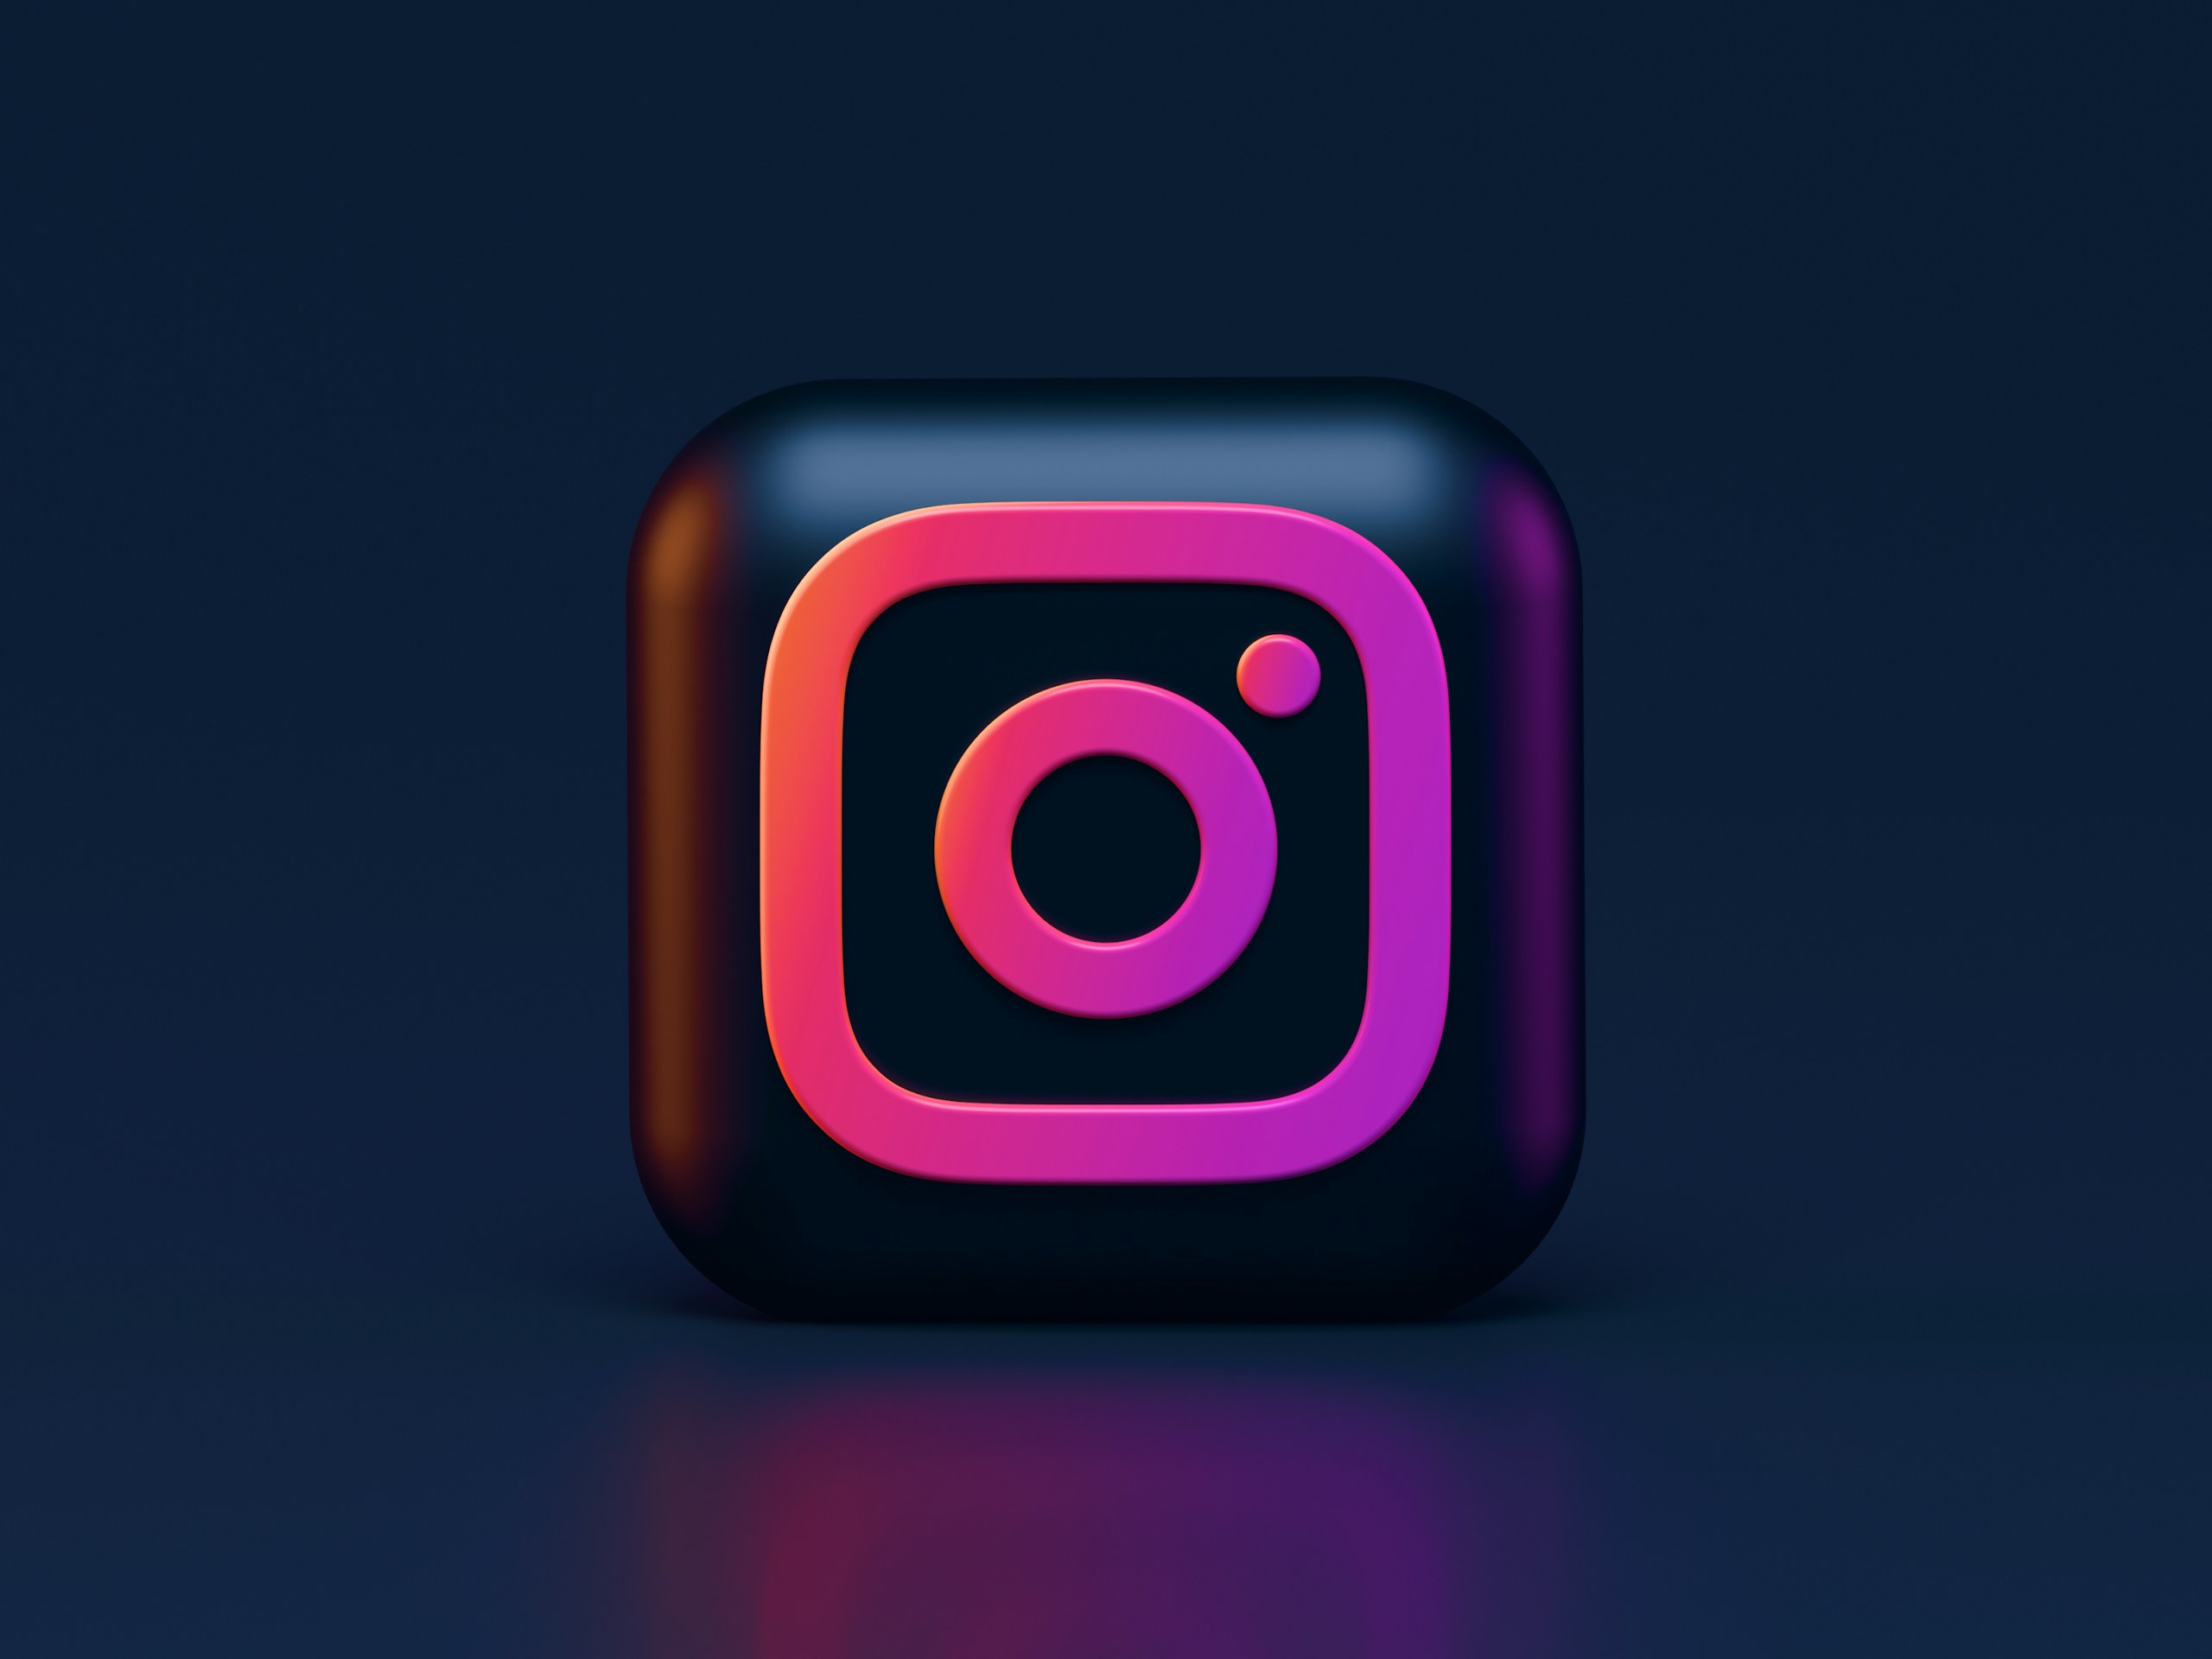 Instagram's logo appearing on a dark 3D shape